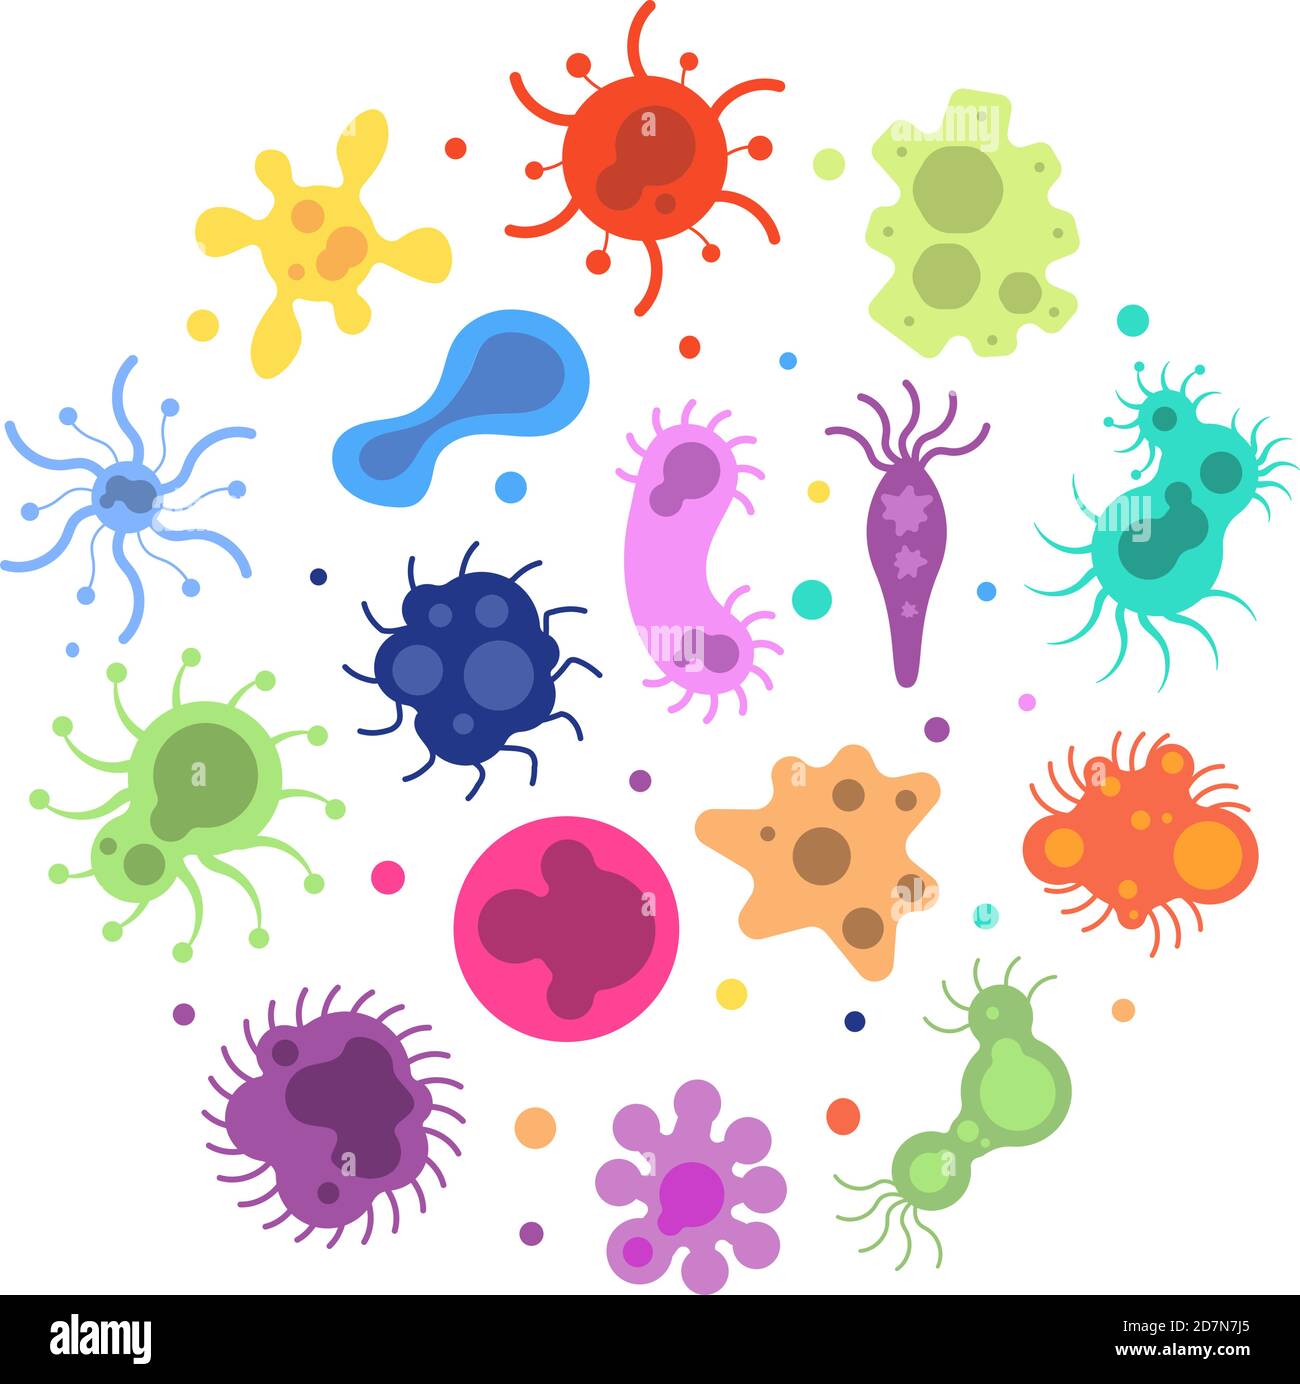 Bakterienkeim. Pandemie Viren biologische, Allergie Mikroben Bakterien Epidemiologie. Infektionen Keime Grippe Krankheiten Vektor bunte Zellen. Amöben-Grippe, Zellkrankheit Infektion Illustration Stock Vektor